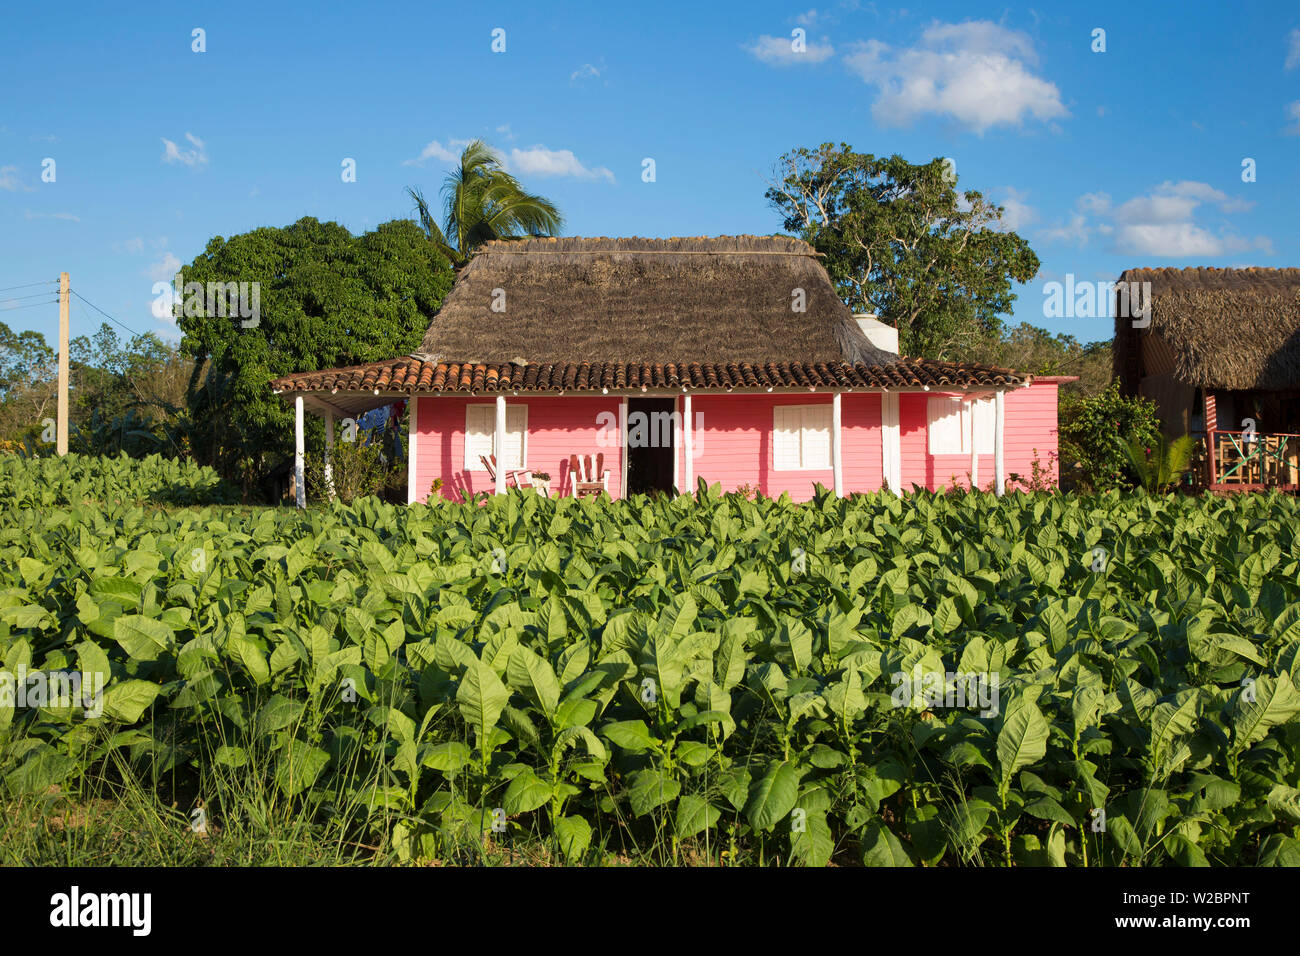 Plantation de tabac, province de Pinar del Rio, Cuba Banque D'Images